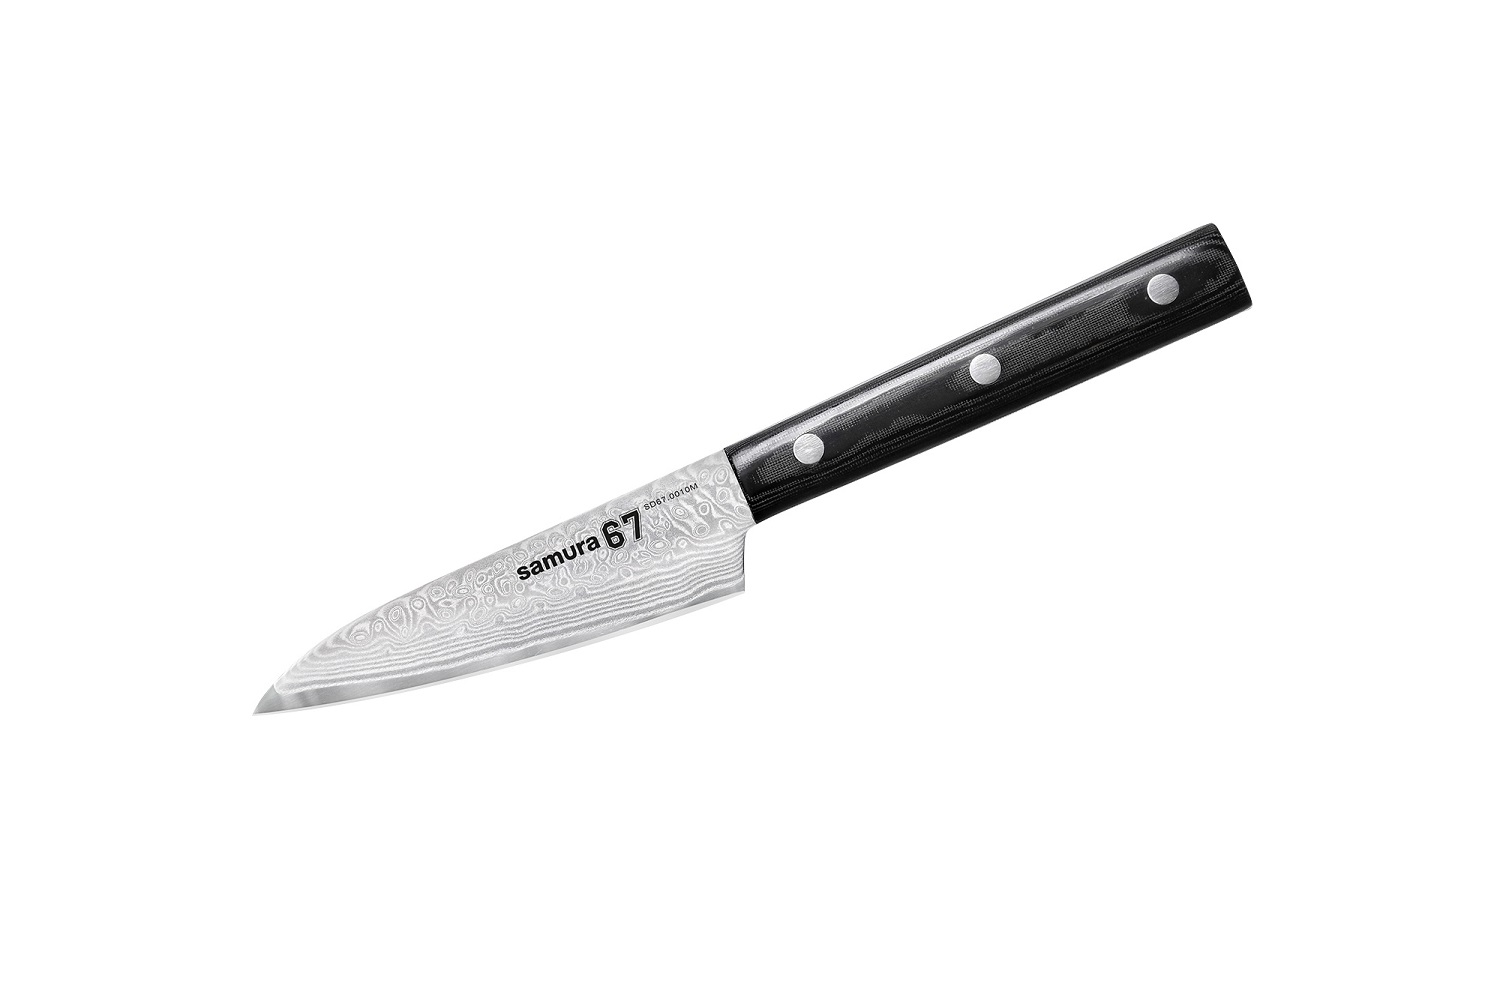 Нож Samura овощной 67, 9,8 см, дамаск 67 слоев, микарта нож кухонный обвалочный samura damascus sd 0063 16 дамасская сталь 165 мм